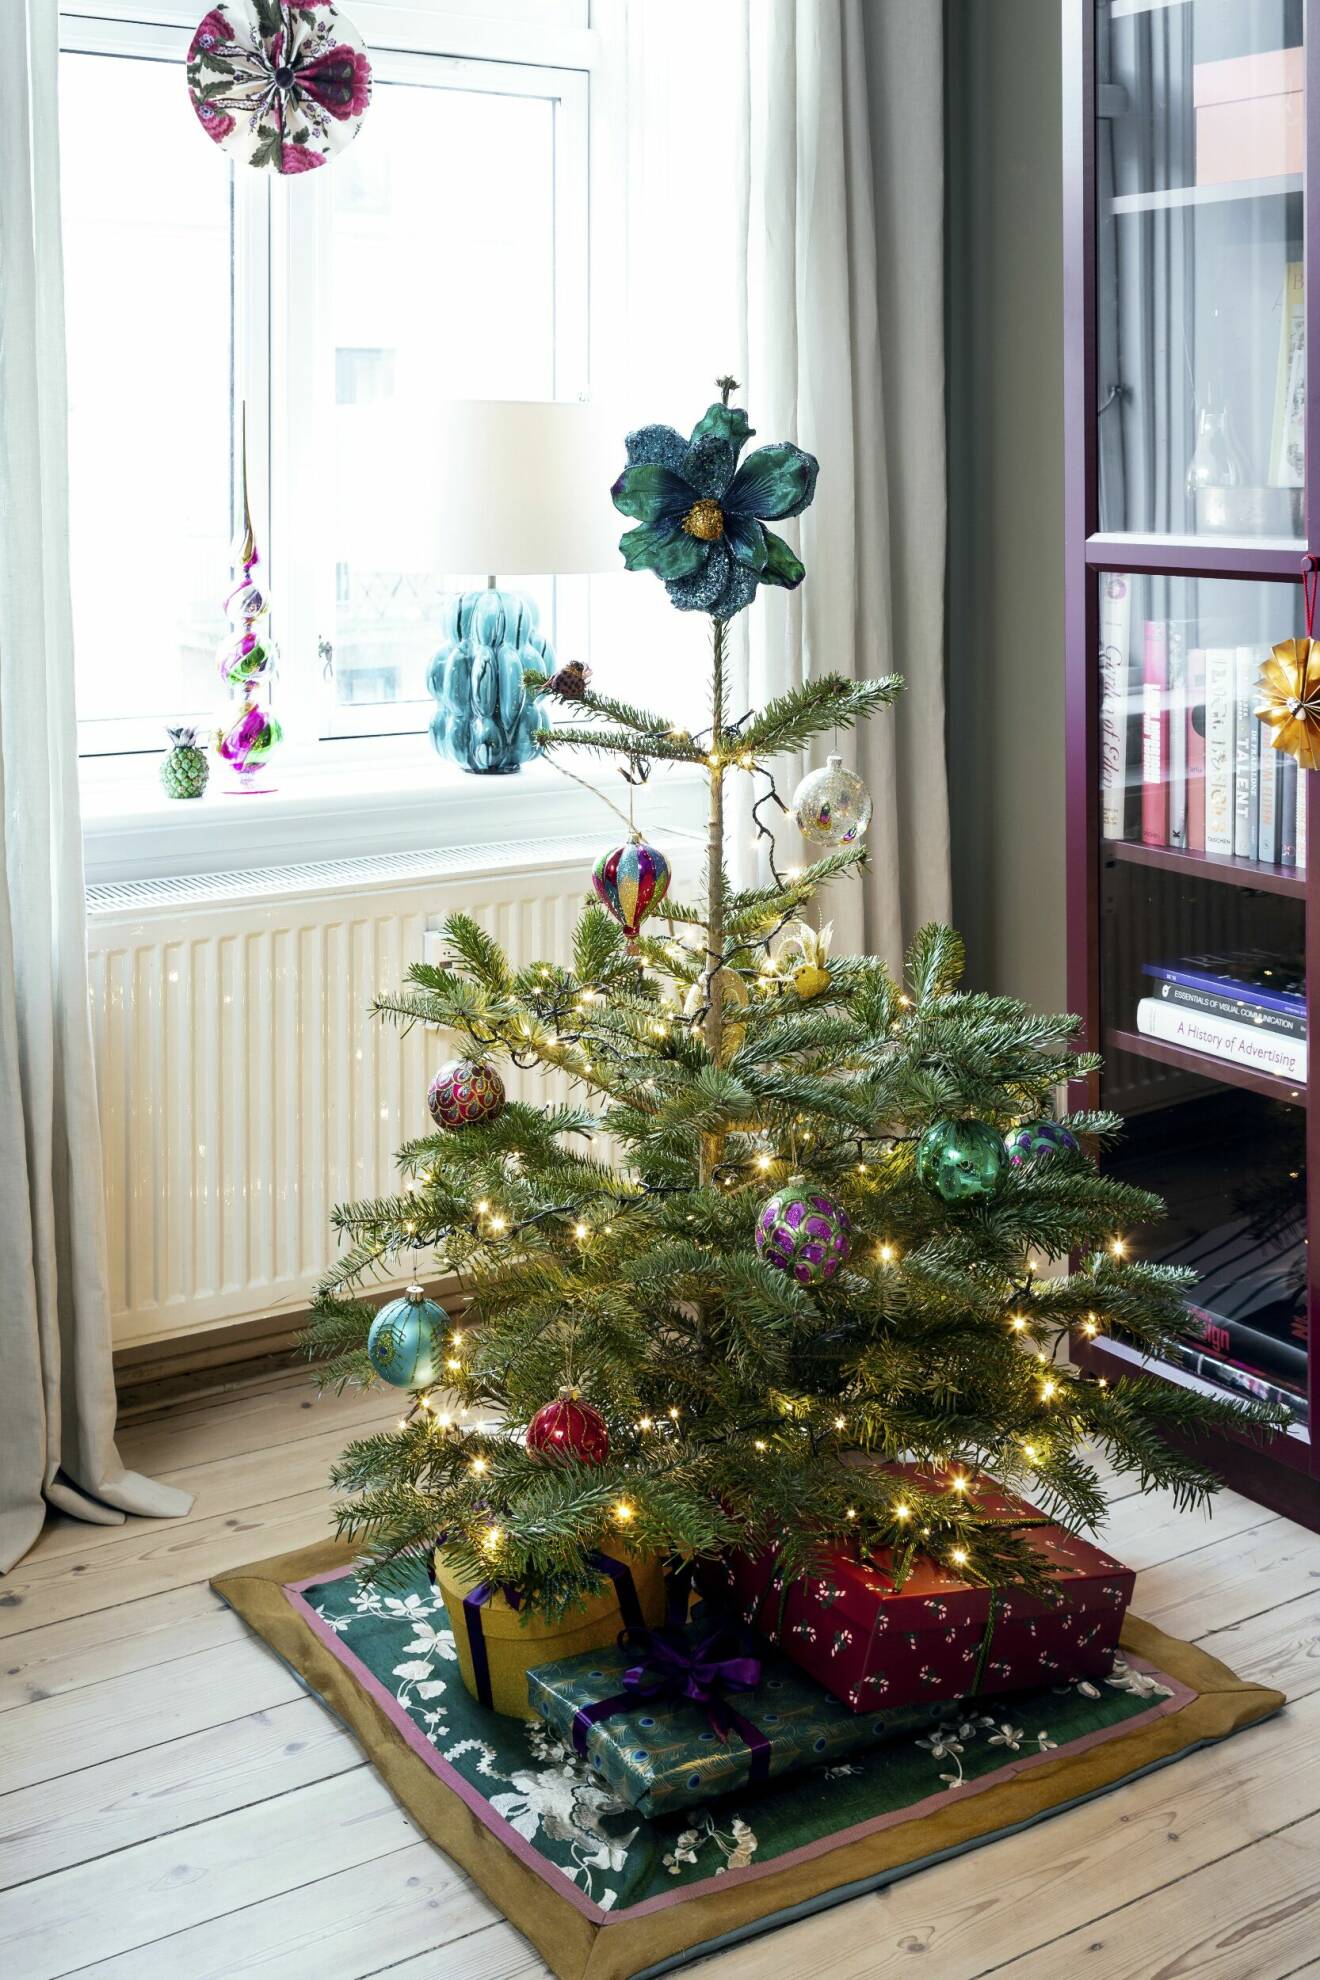 Liten julgran på hemmasydd julgransmatta med velourblomma som julgransstjärna